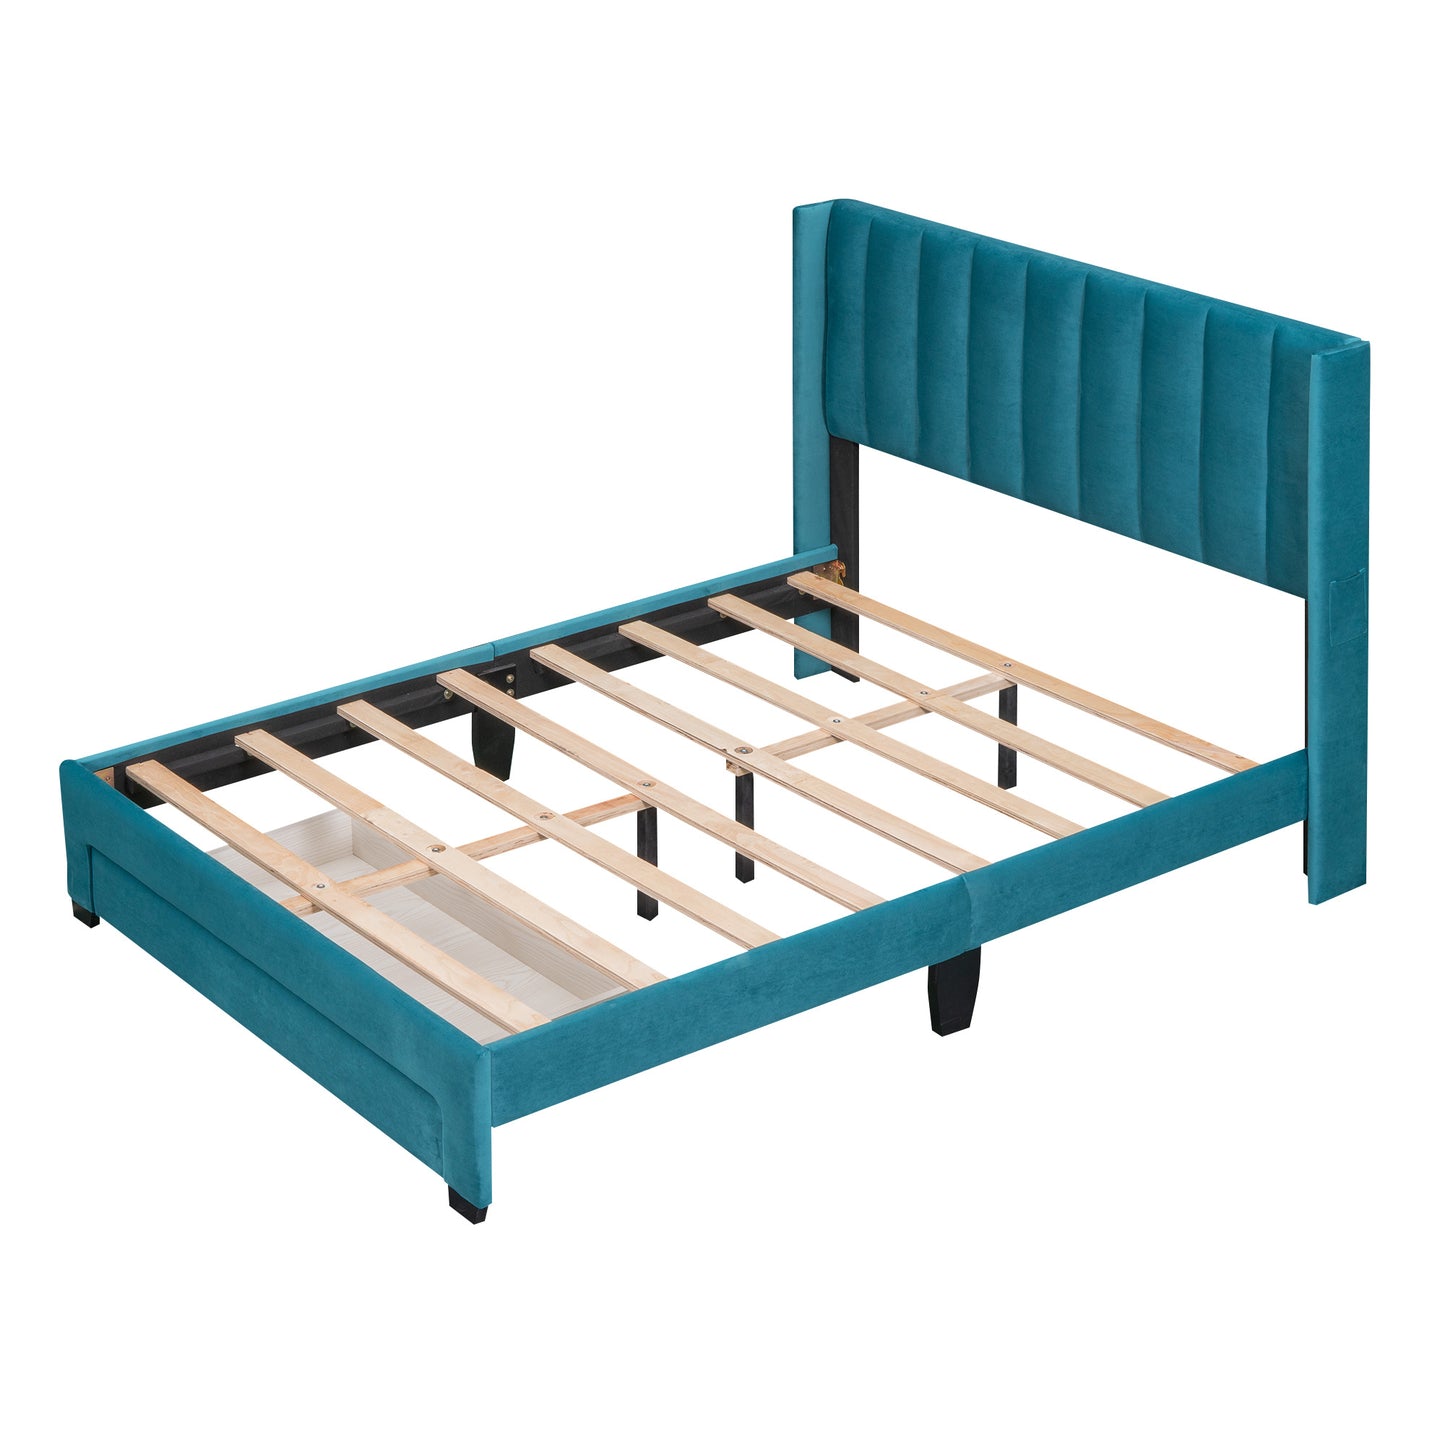 danny velvet upholstered platform bed with a big drawer - blue